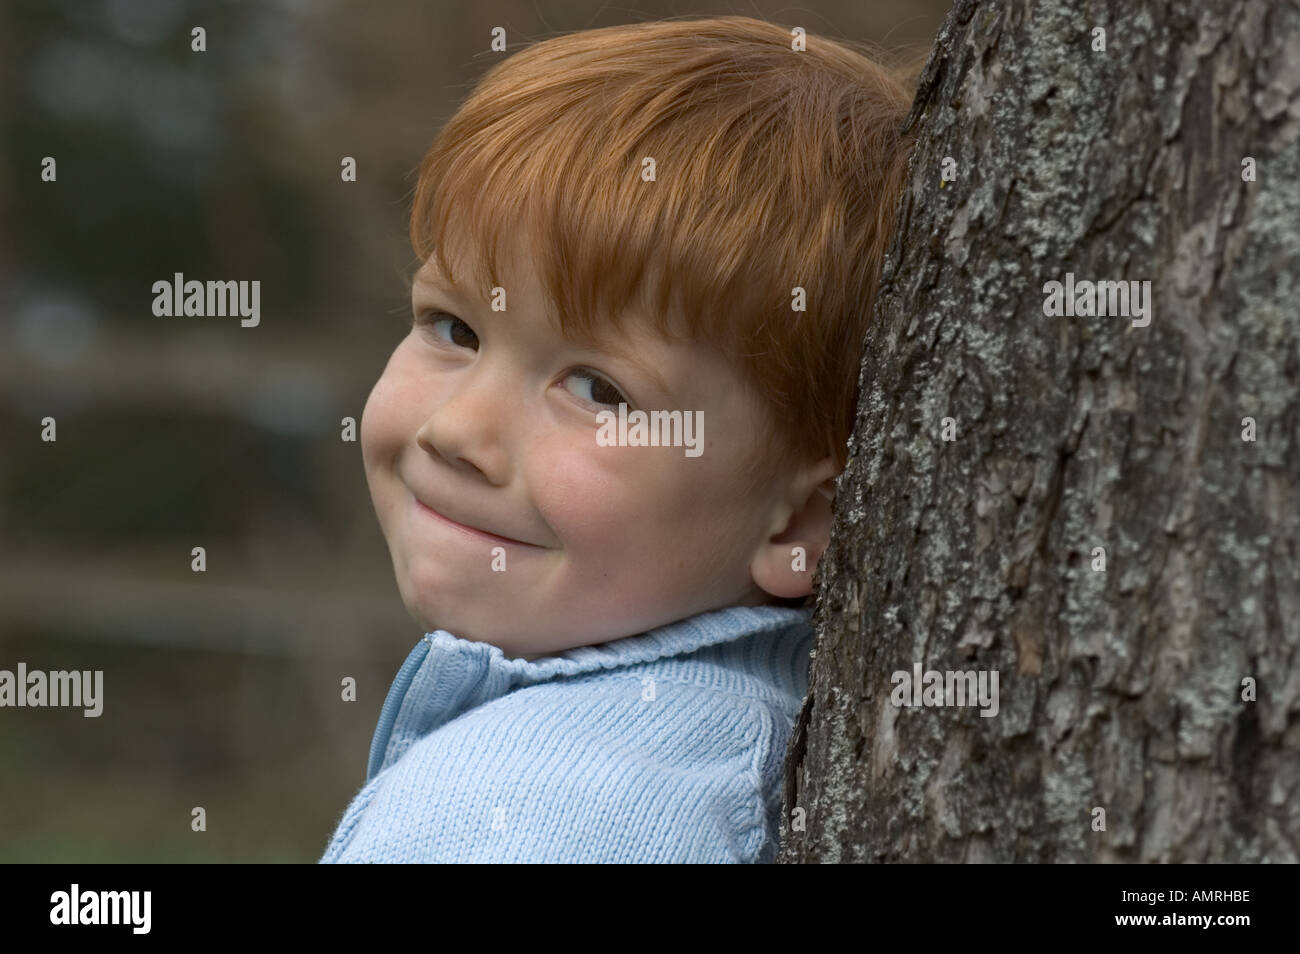 Signor kleiner Junge vier Jahre lehnt un einem Baum signor little boy 4 quattro anni si appoggia a un albero Foto Stock